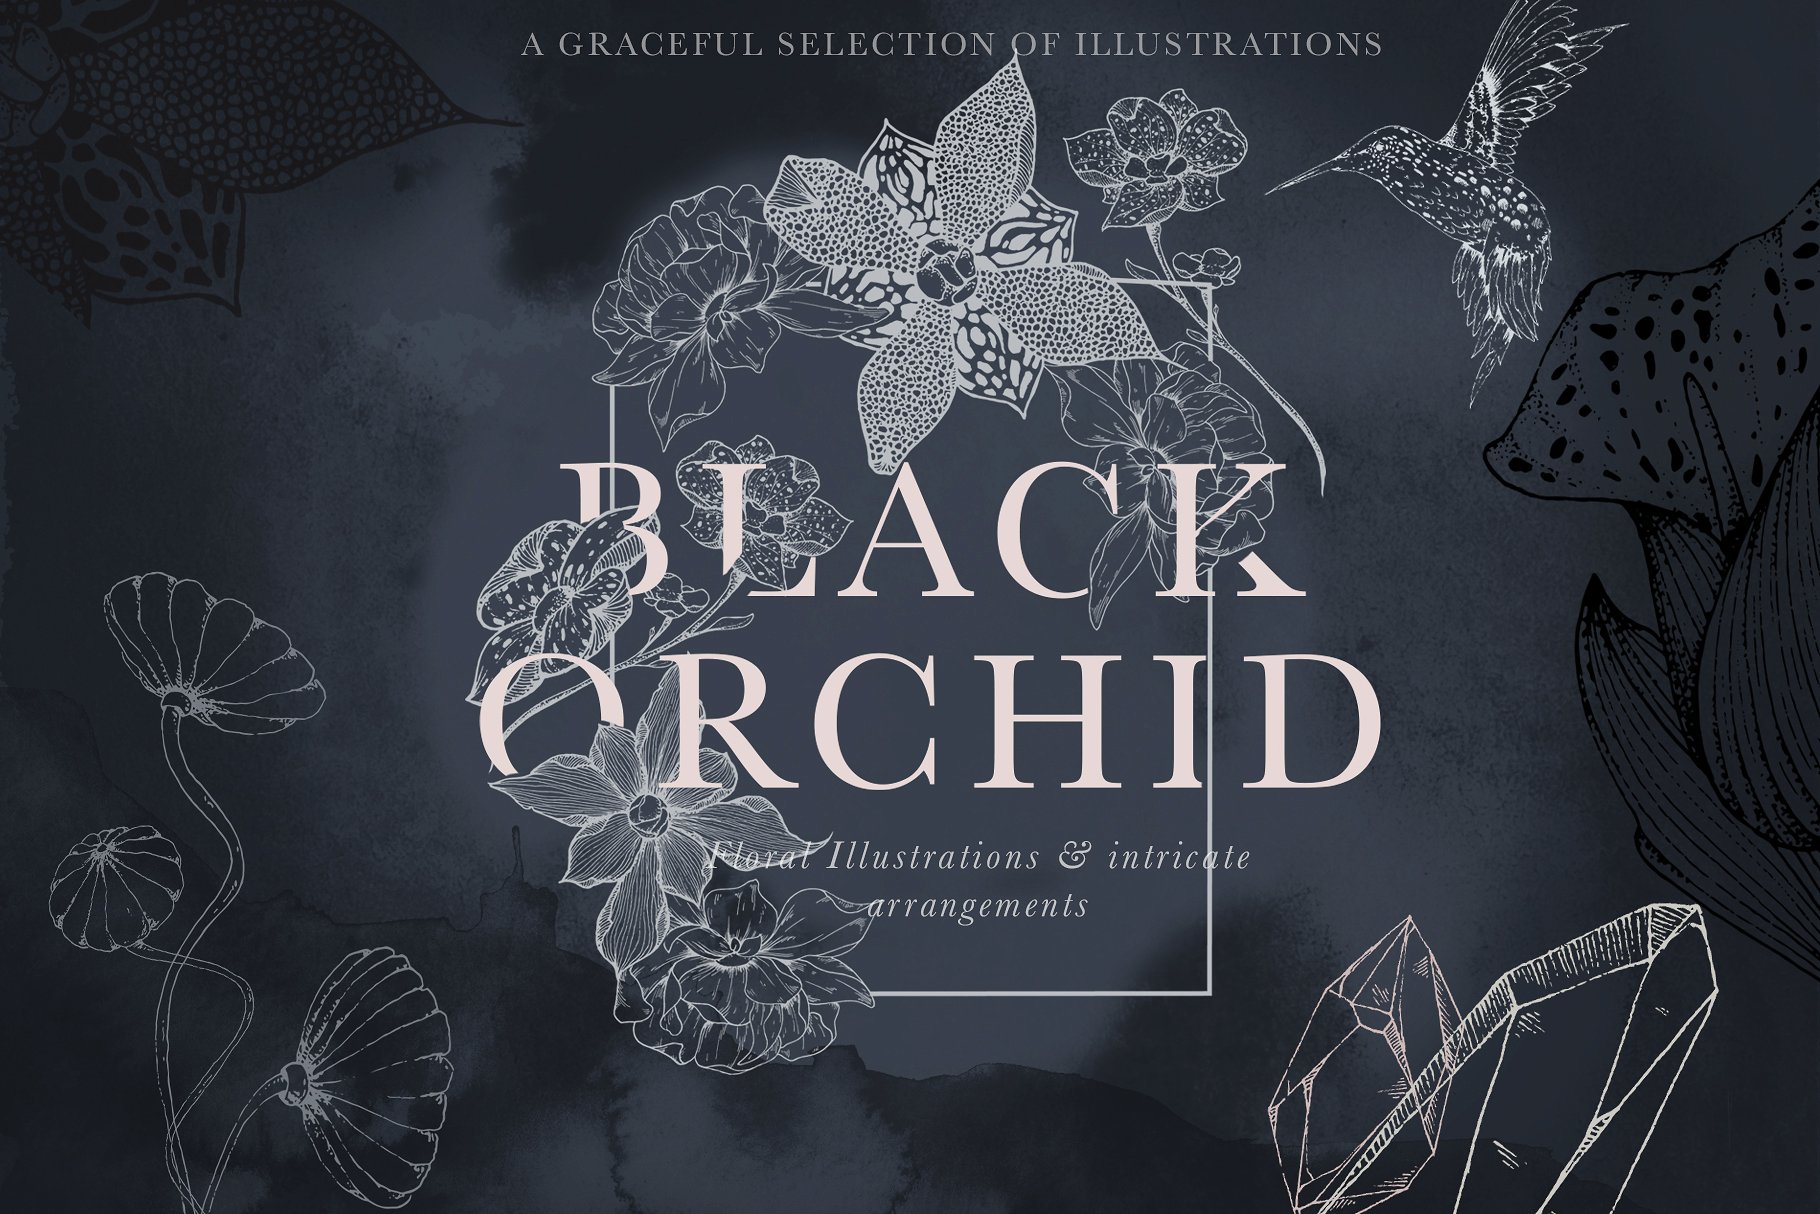 虚实结合黑色背景手绘矢量花卉图形素材 Black Orchid Illustration Set插图